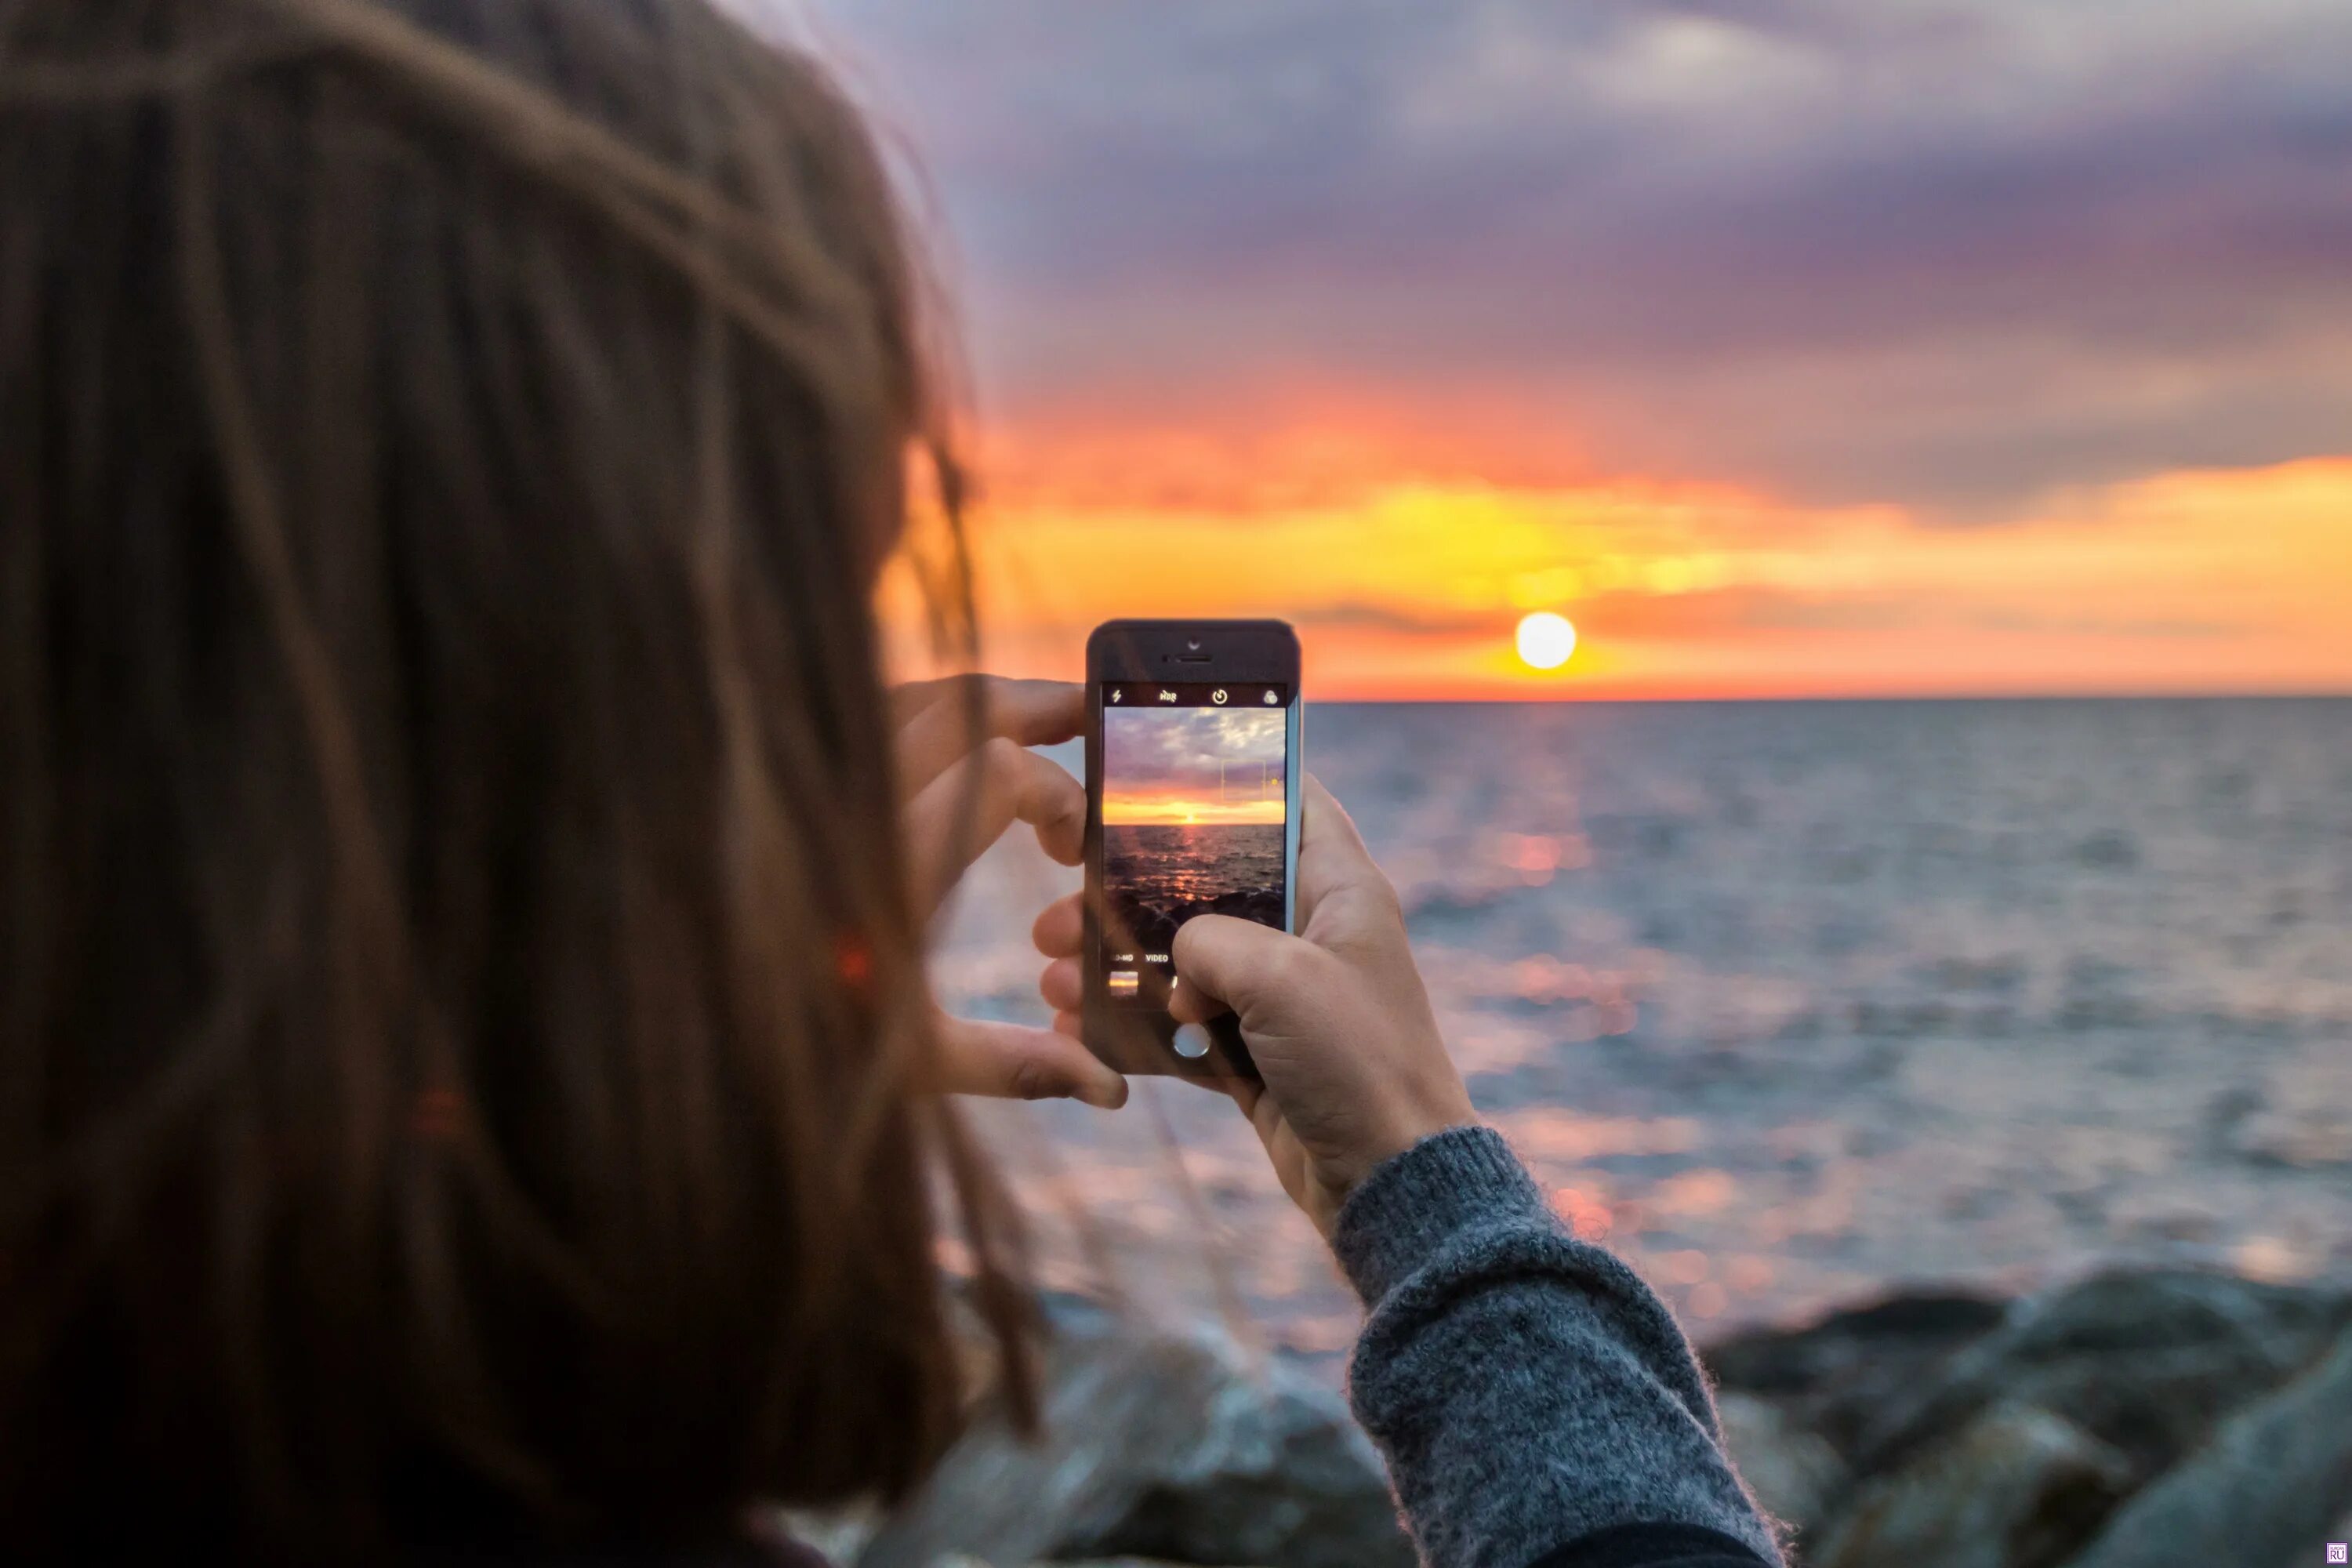 Снято на телефон по кругу. Фотографирует на телефон. Девушка фотографирует на телефон. Фотографирую закат. Девушка фотографирует море.